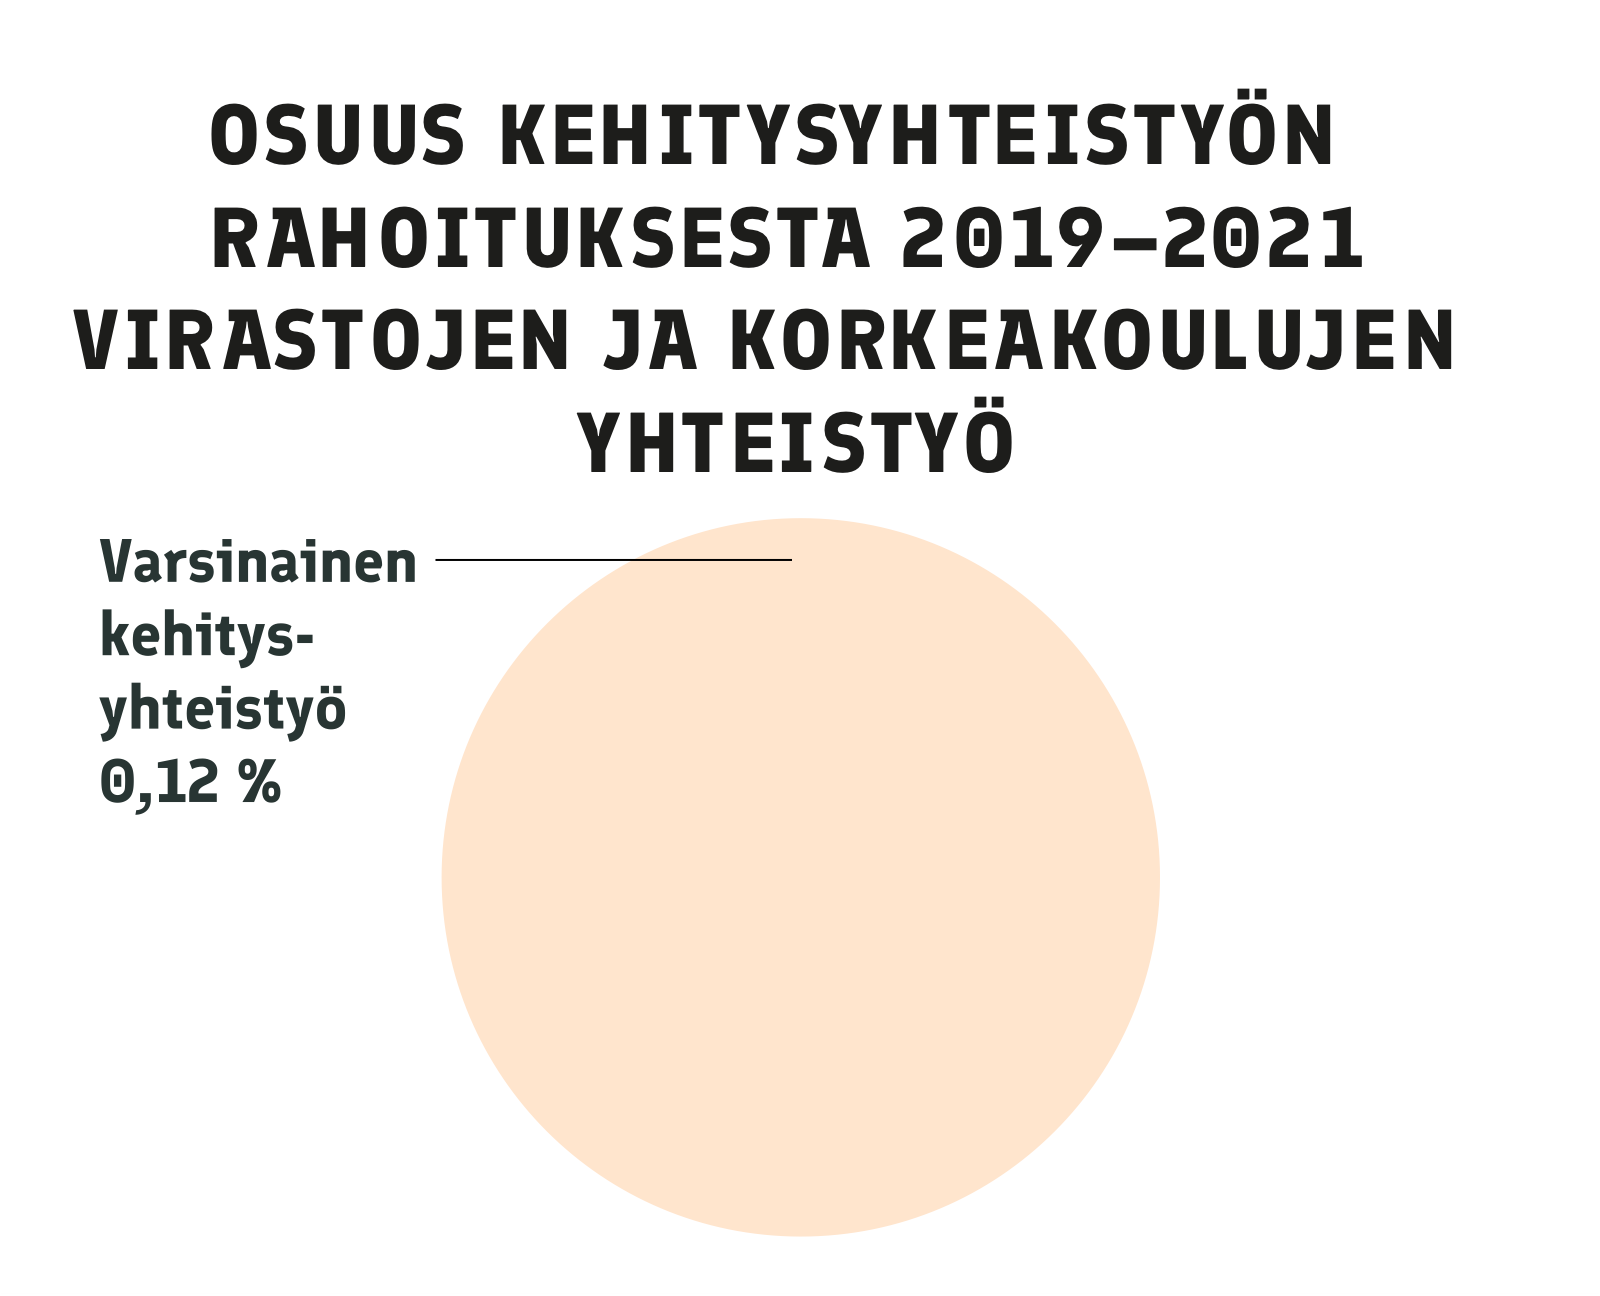 Vuosina 2019-2021 Suomi käytti 0,12 prosenttia kehitysyhteistyöstään virastojen ja korkeakoulujen yhteistyöhön. Koko osuus laskettiin nin sanotuksi varsinaiseksi kehitysyhteistyöksi.